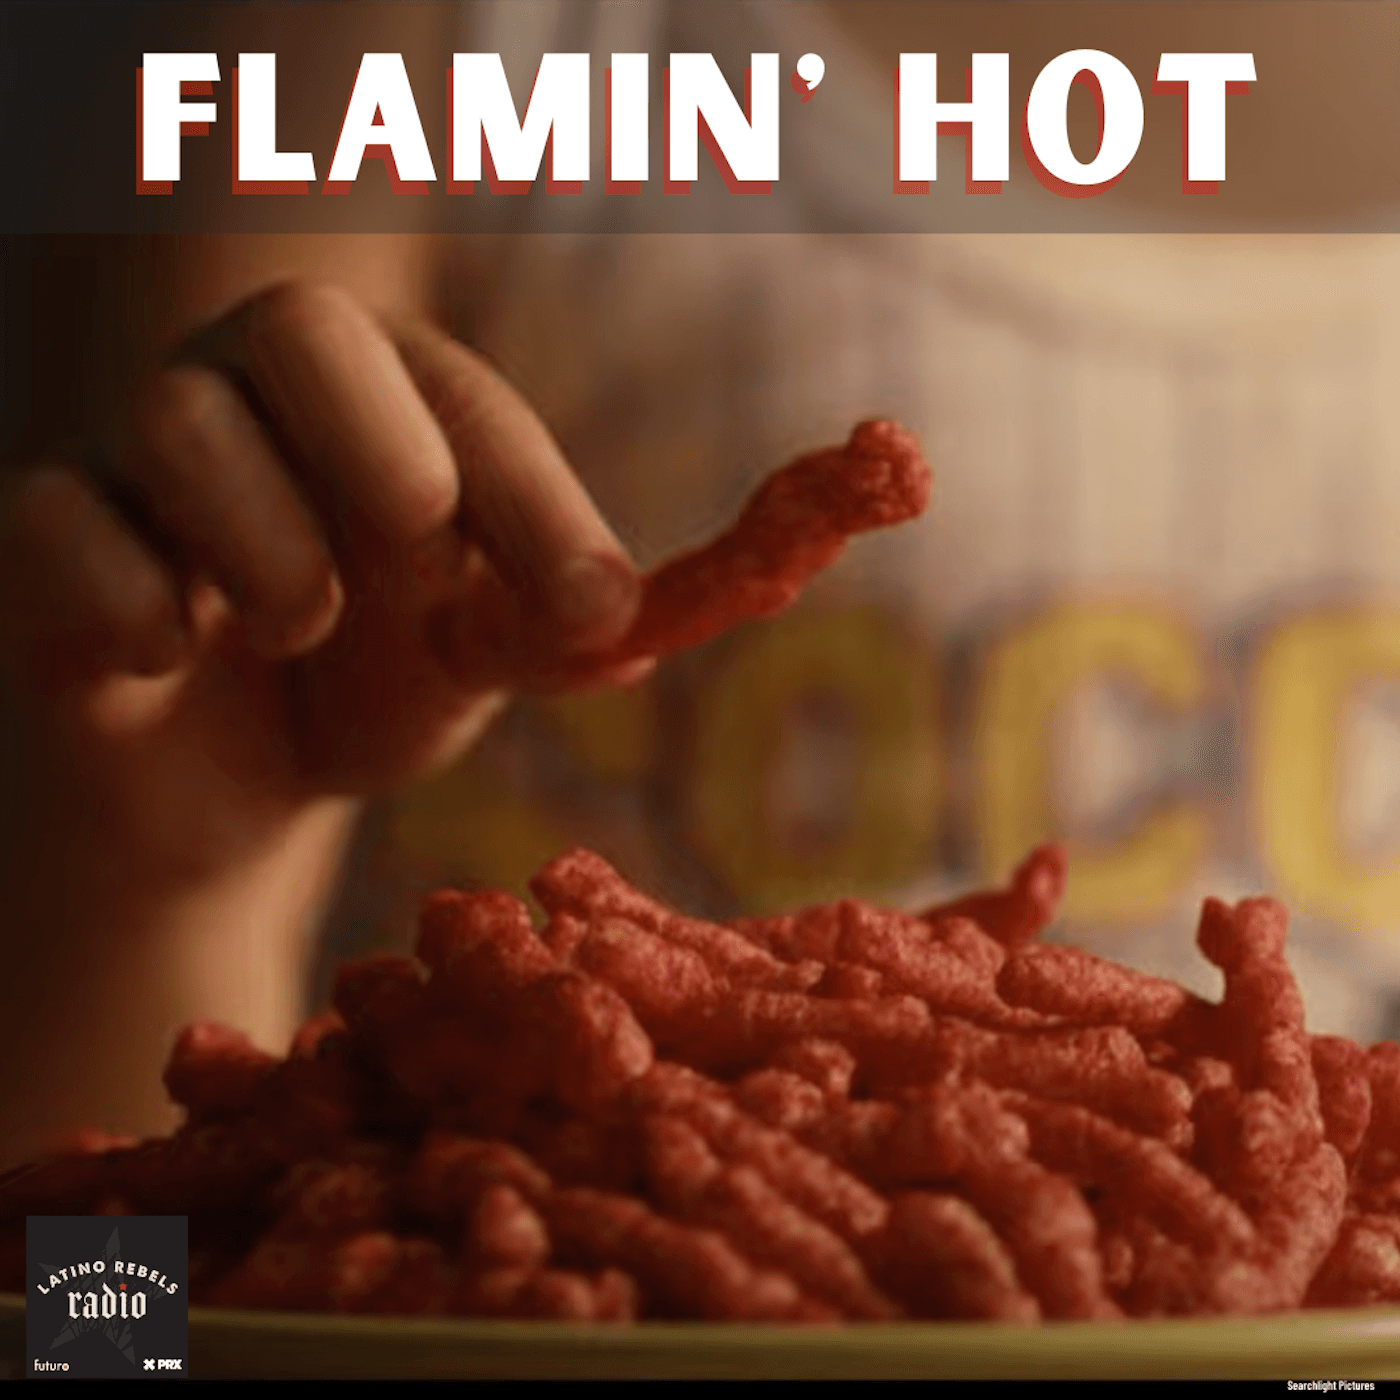 Thumbnail for "Flamin' Hot".